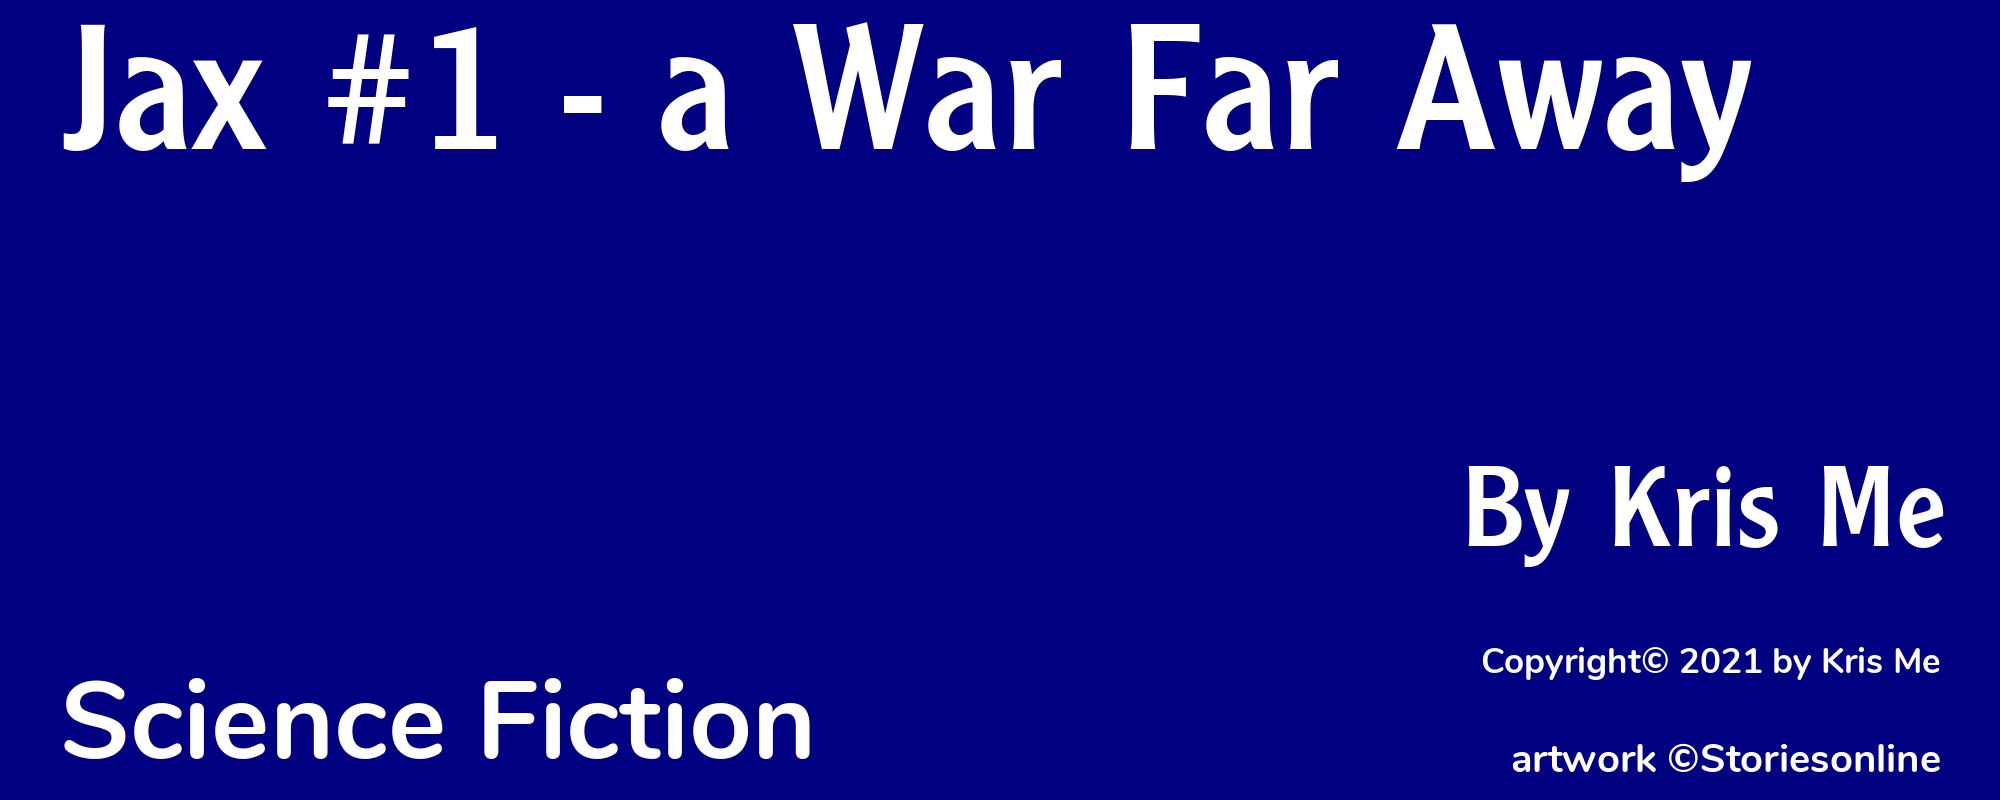 Jax #1 - a War Far Away - Cover